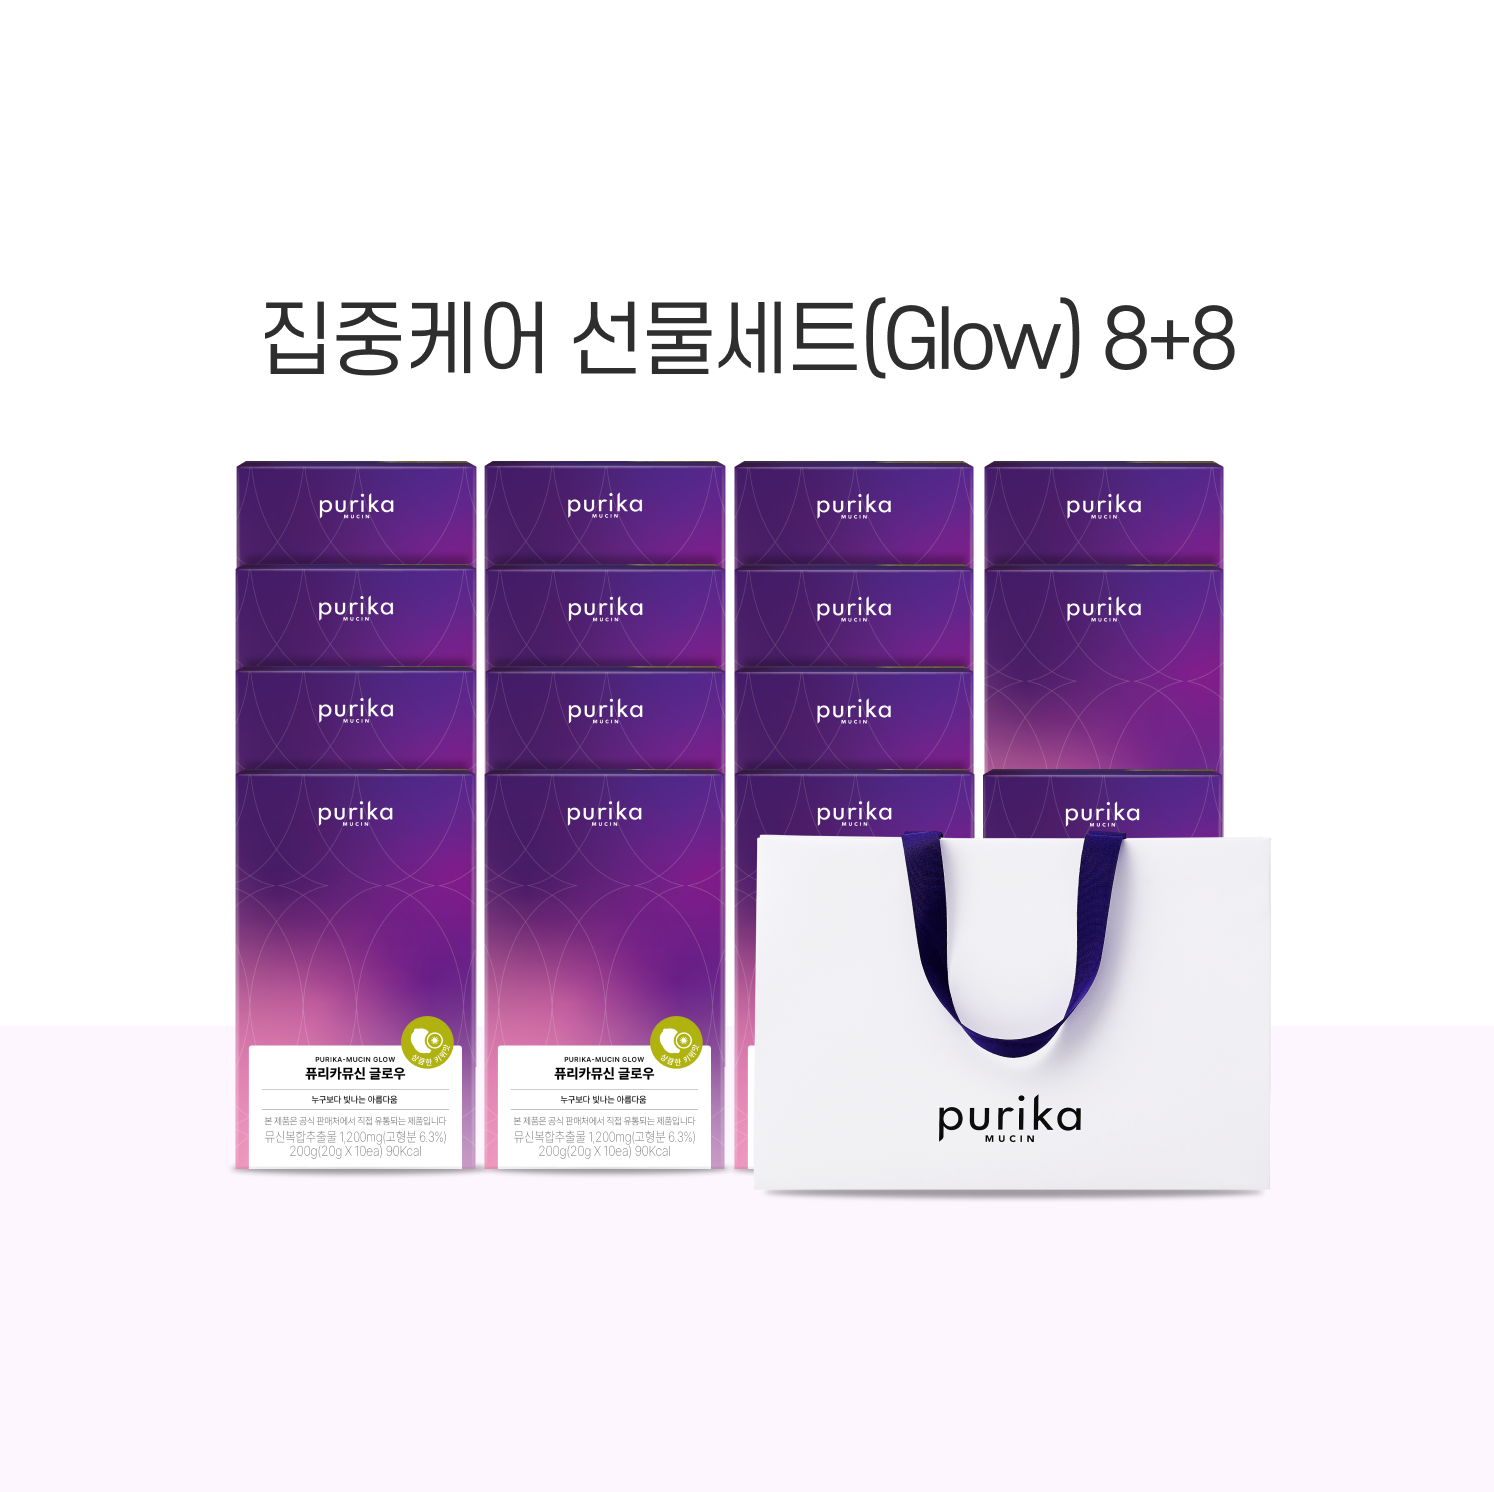 뮤신 글로우 8+8 선물세트(16box) + 쇼핑백 증정(1매)